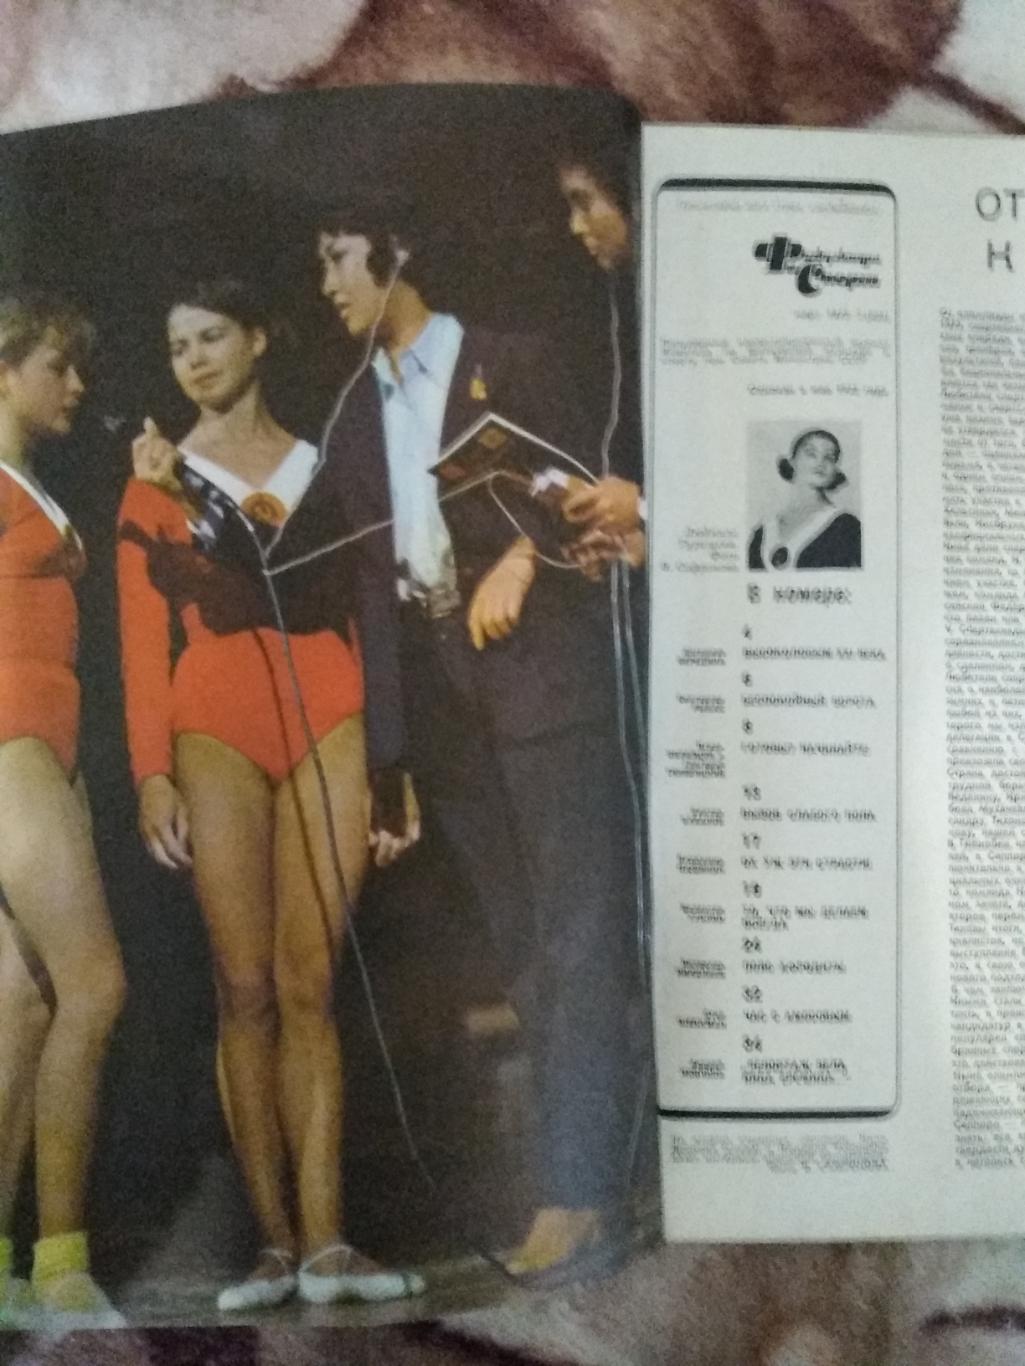 Журнал.Физкультура и спорт № 3 1972 г. (ФиС). 1